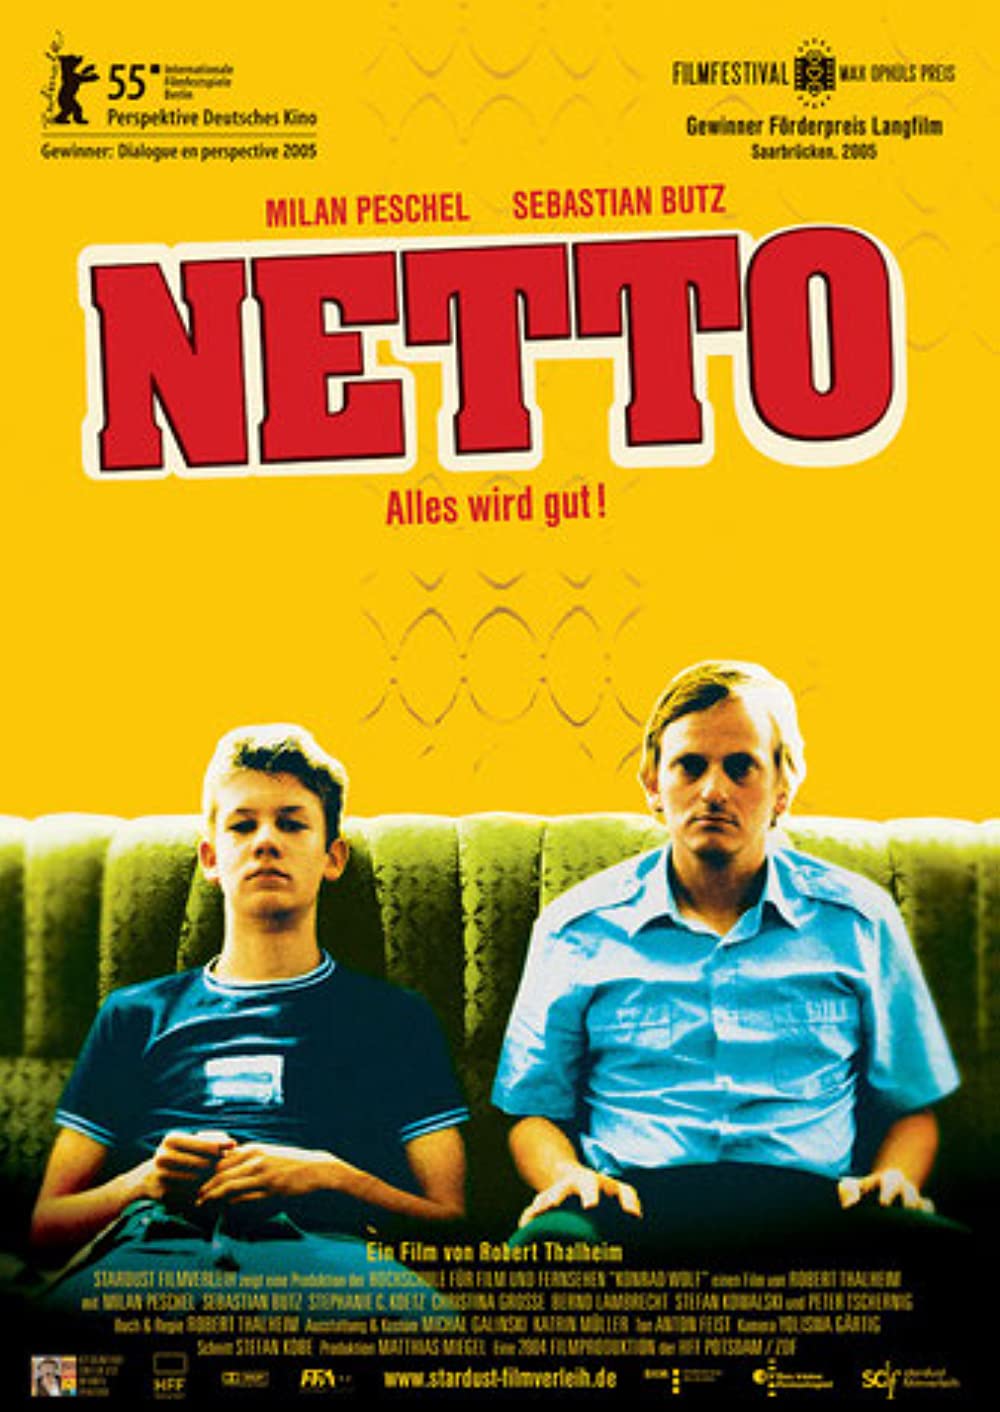 Filmbeschreibung zu Netto